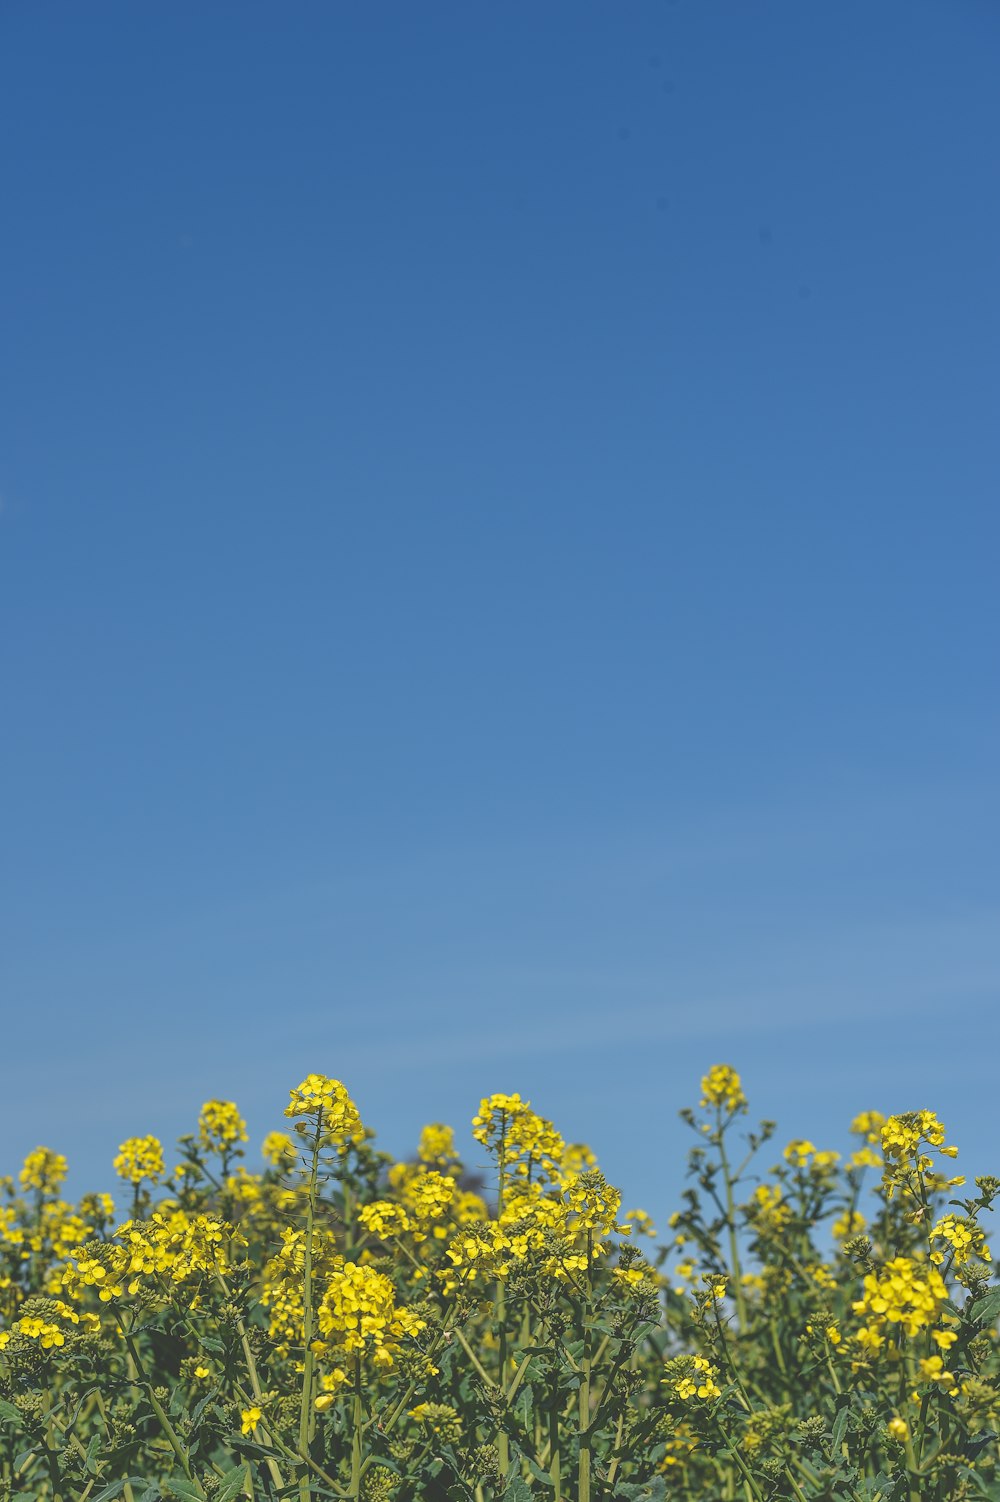 낮에는 맑고 푸른 하늘 아래 노란 꽃잎이 피었습니다.